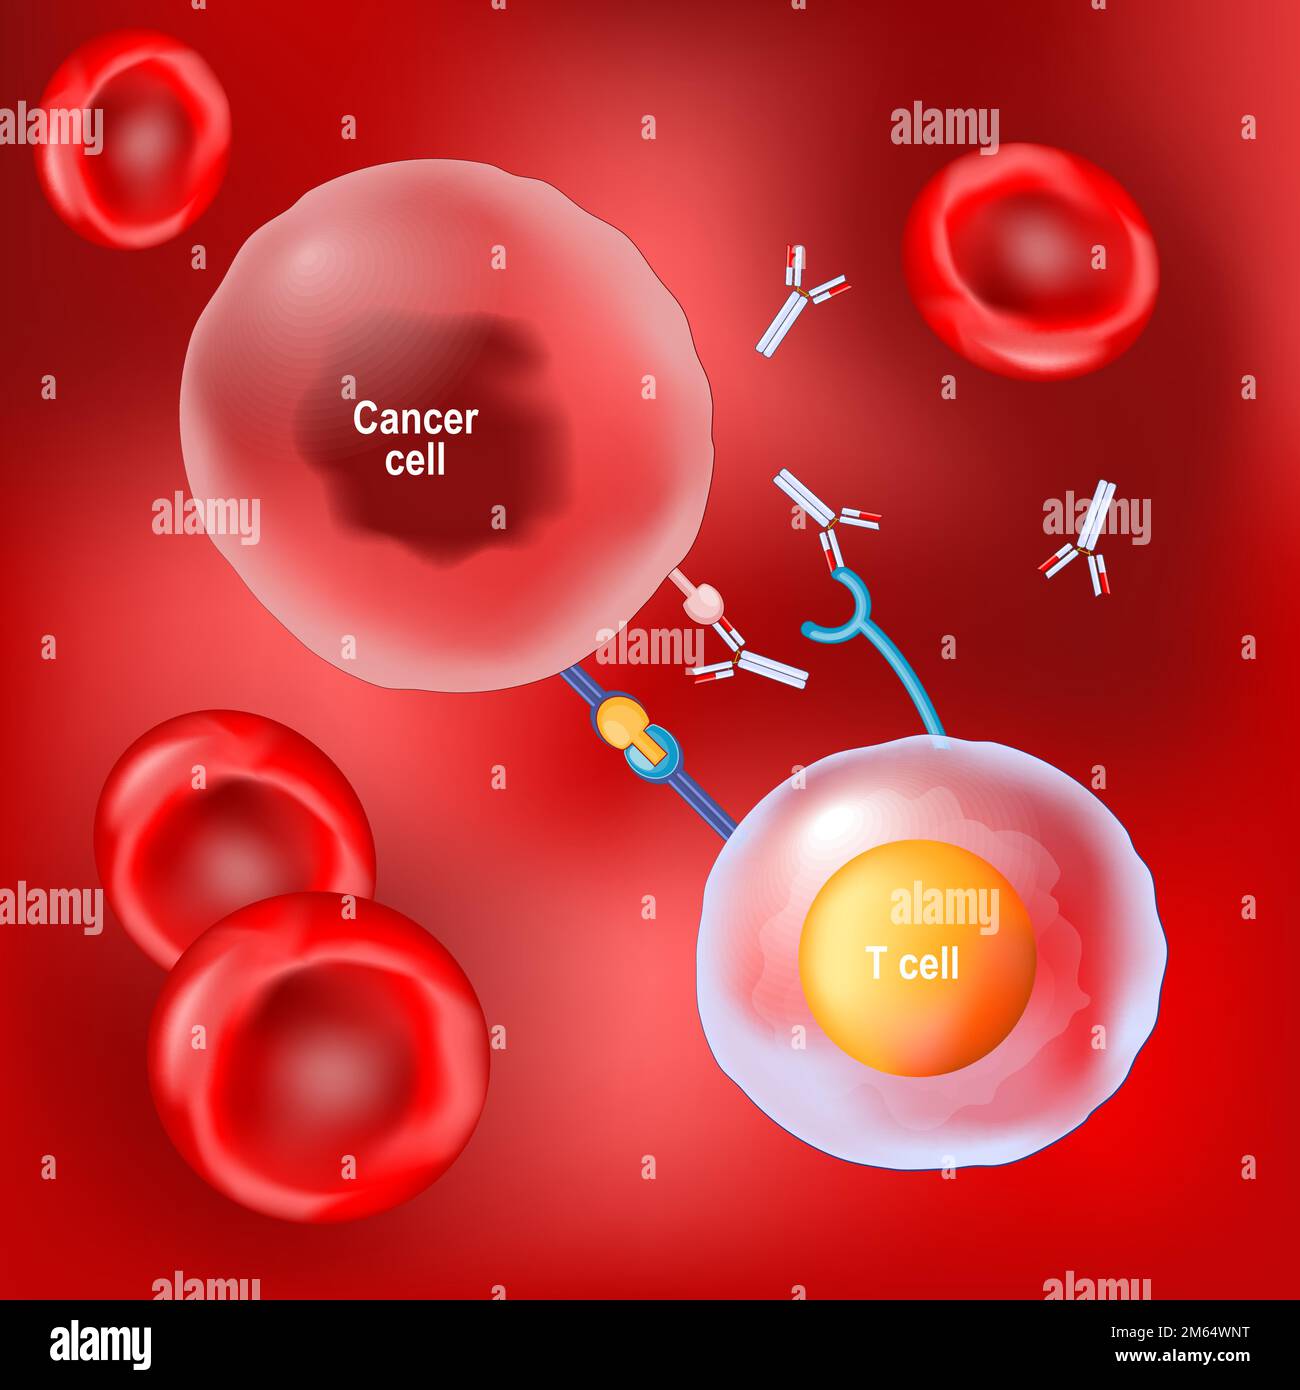 Krebstherapie und monoklonale Antikörper. Erythrozyten, T-Zellen und Krebszellen auf rotem Hintergrund. Vektor Stock Vektor